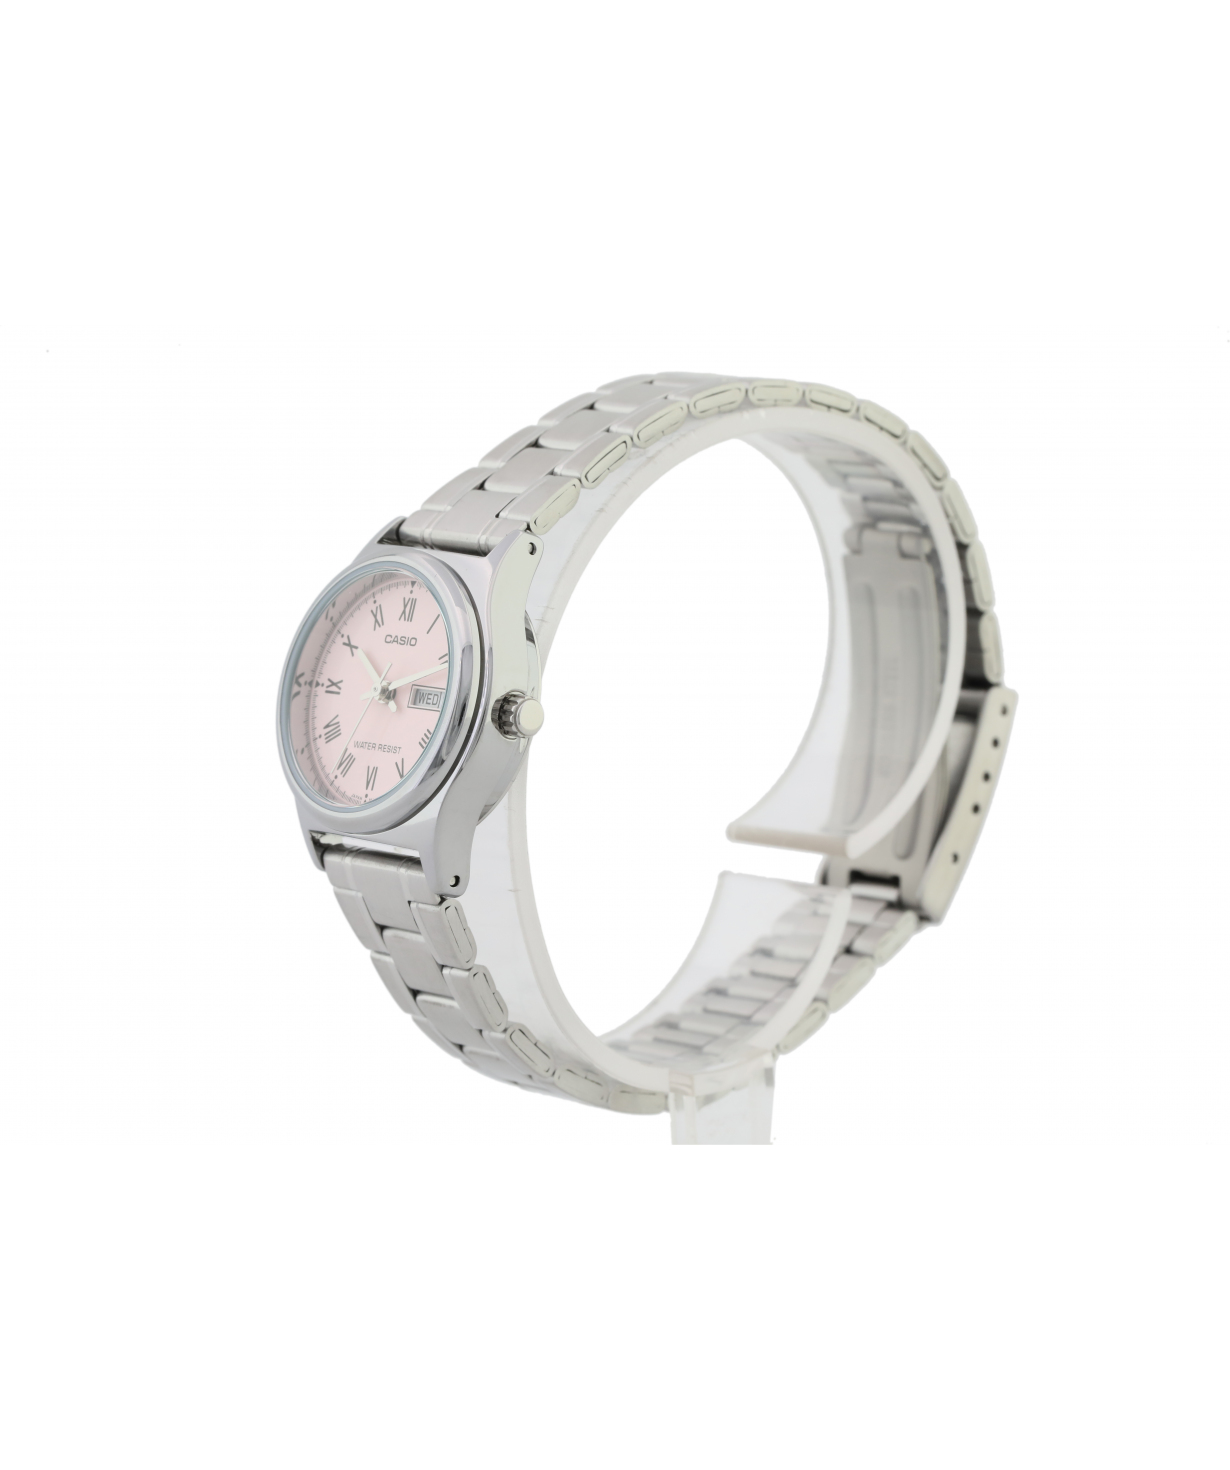 Ժամացույց  «Casio» ձեռքի  LTP-V006D-4BUDF